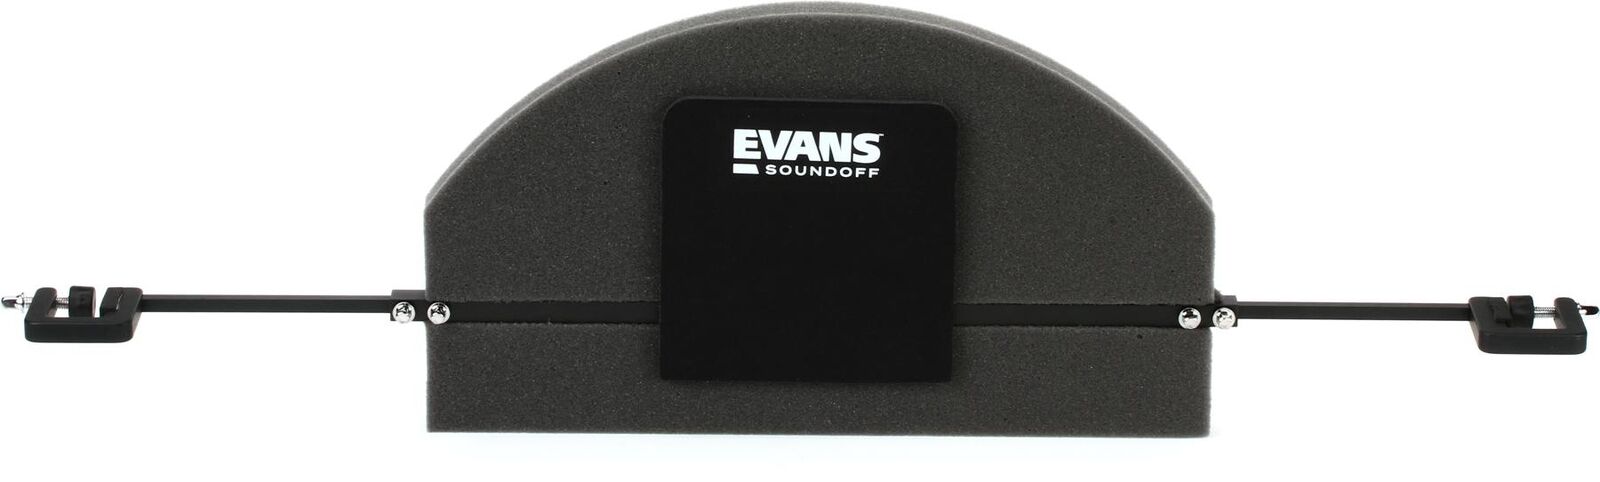 Evans SoundOff Universal Bass Drum Mute